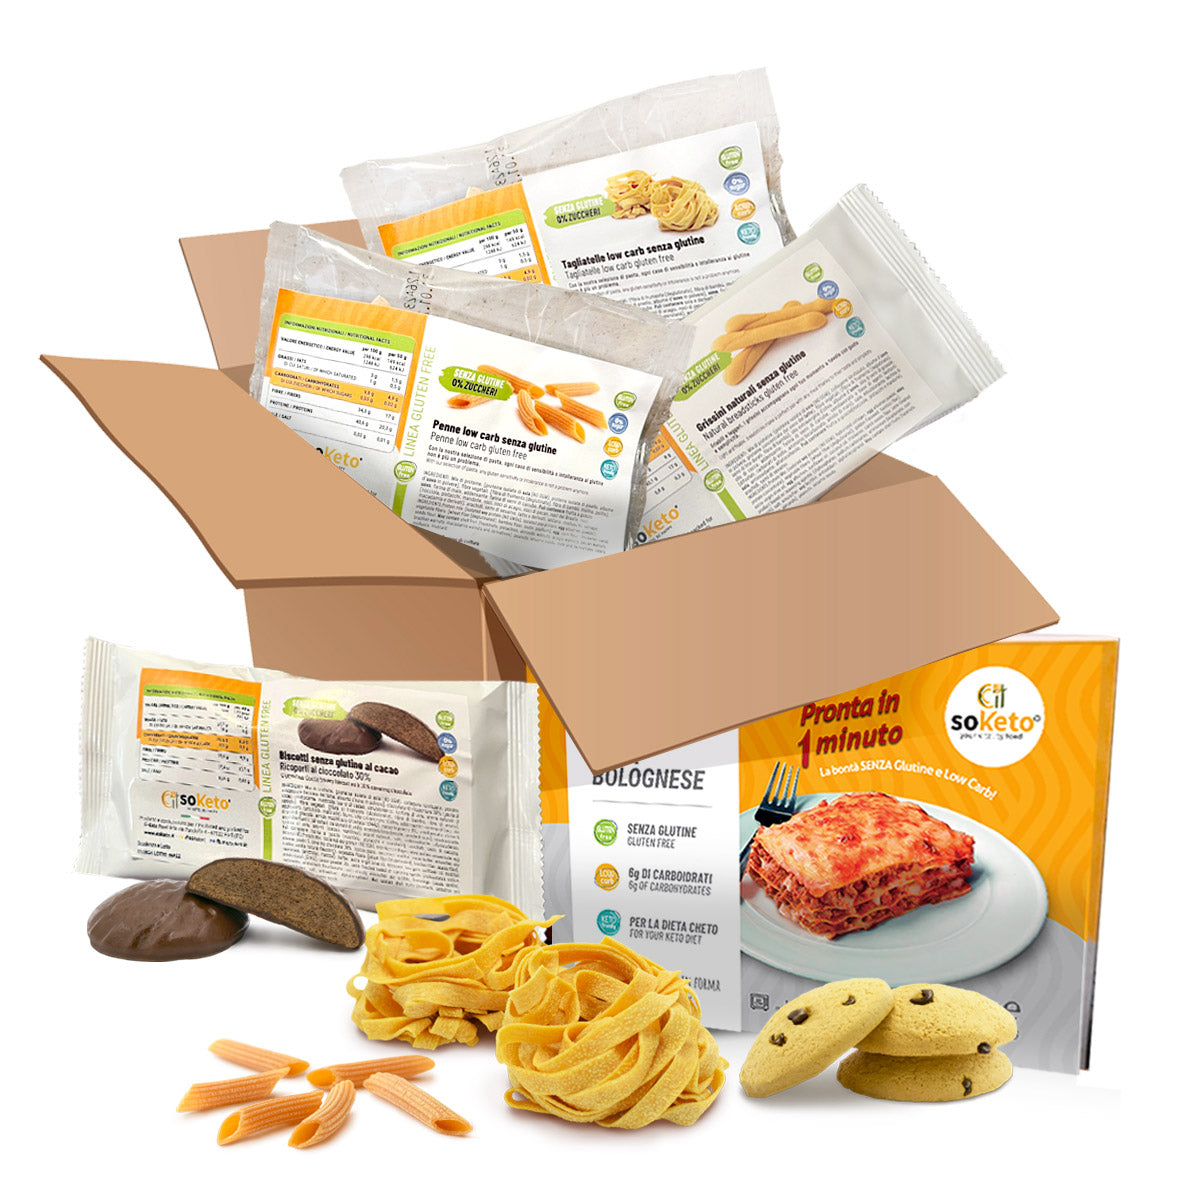 BOX KETO & GLUTEN FREE - Pack per 7 giorni di keto gluten free